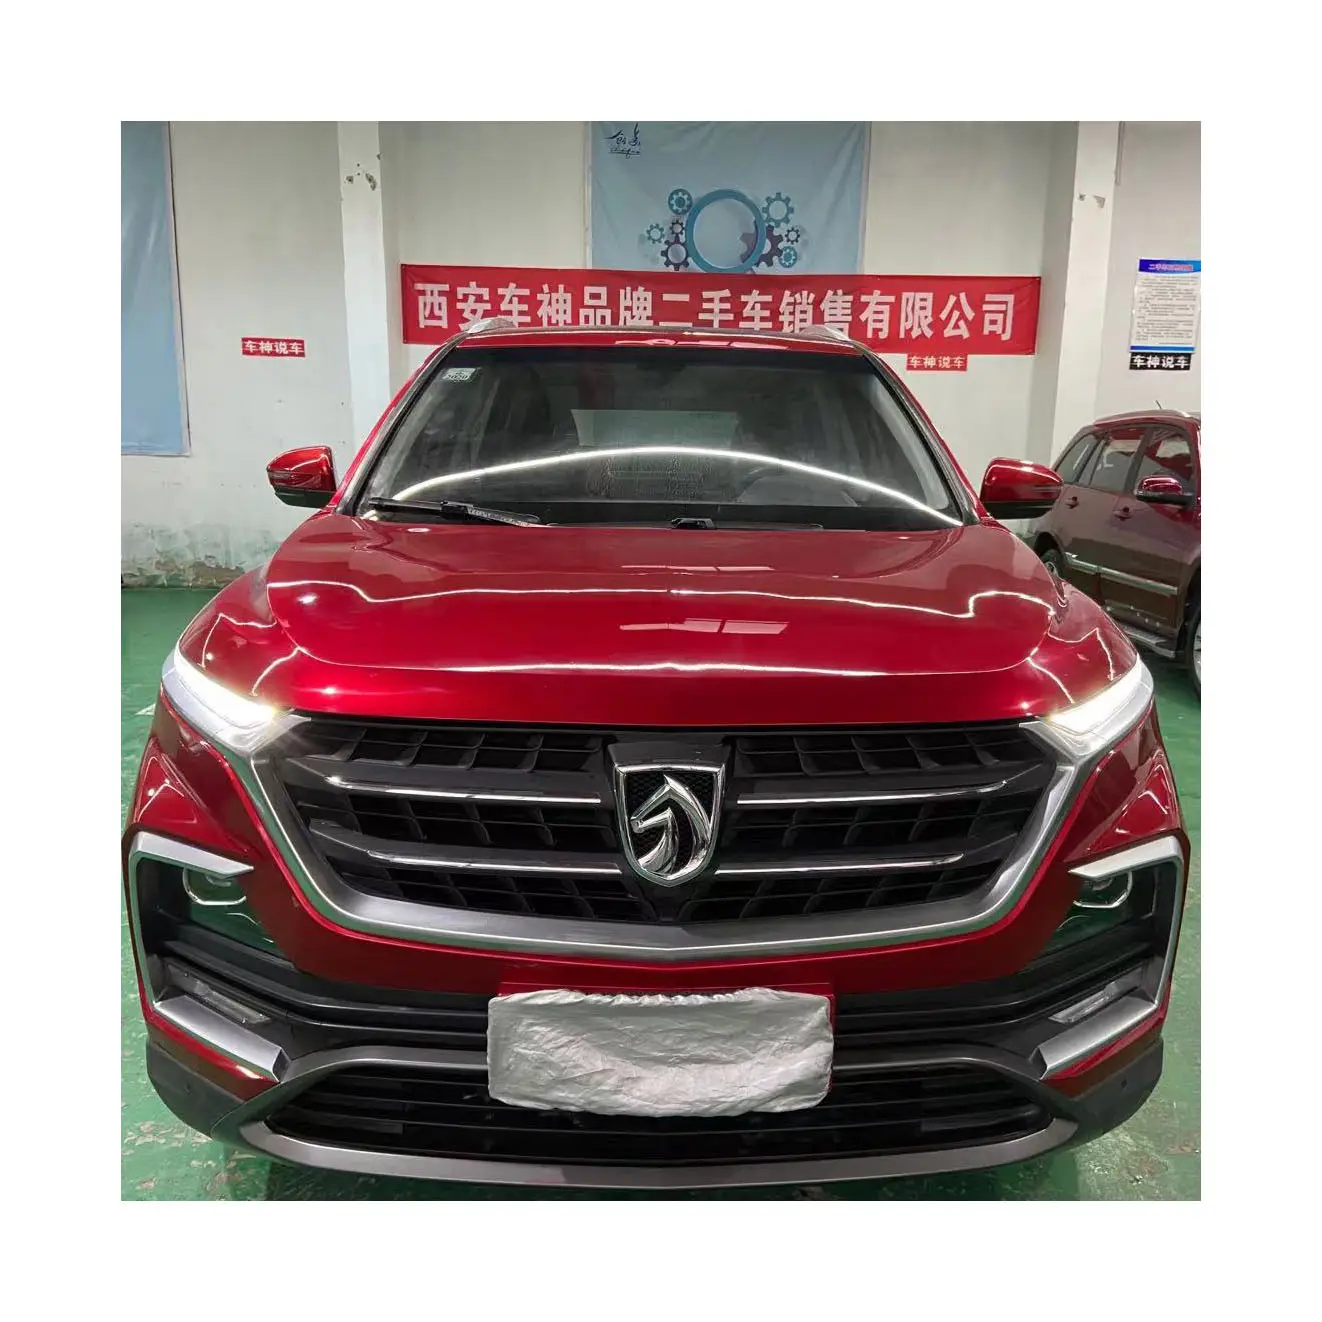 2018 kırmızı Baojun 530 SUV 1.5T manuel asil